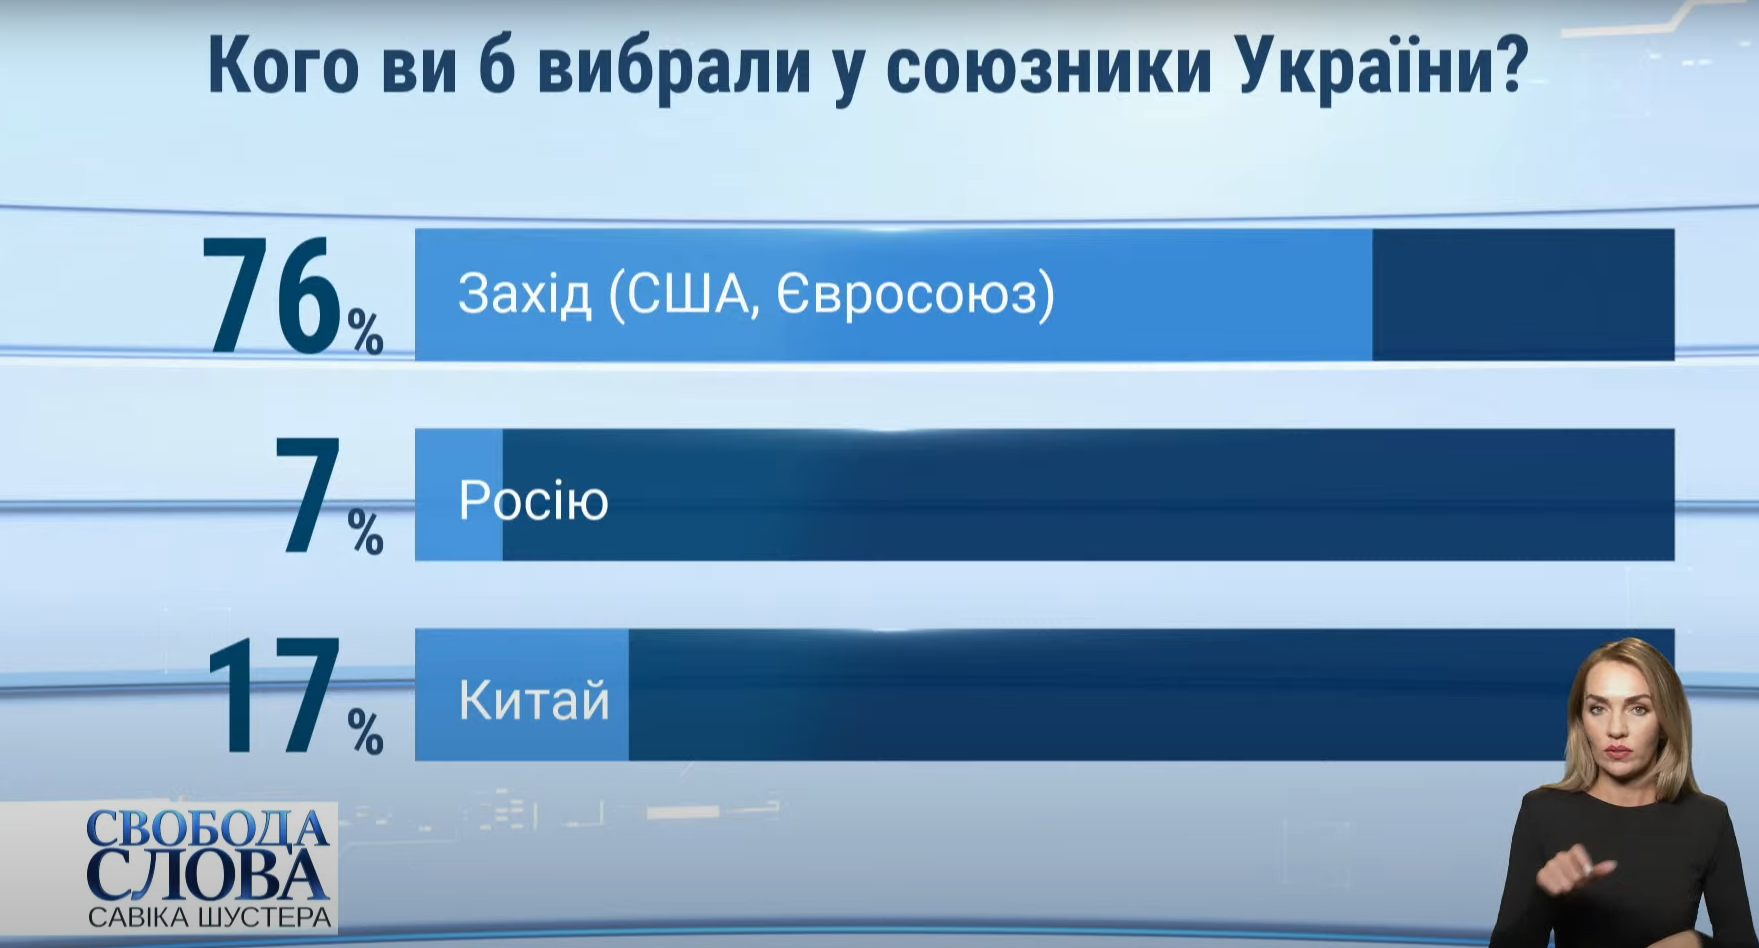 Результаты опроса о лучшем союзнике для Украины.